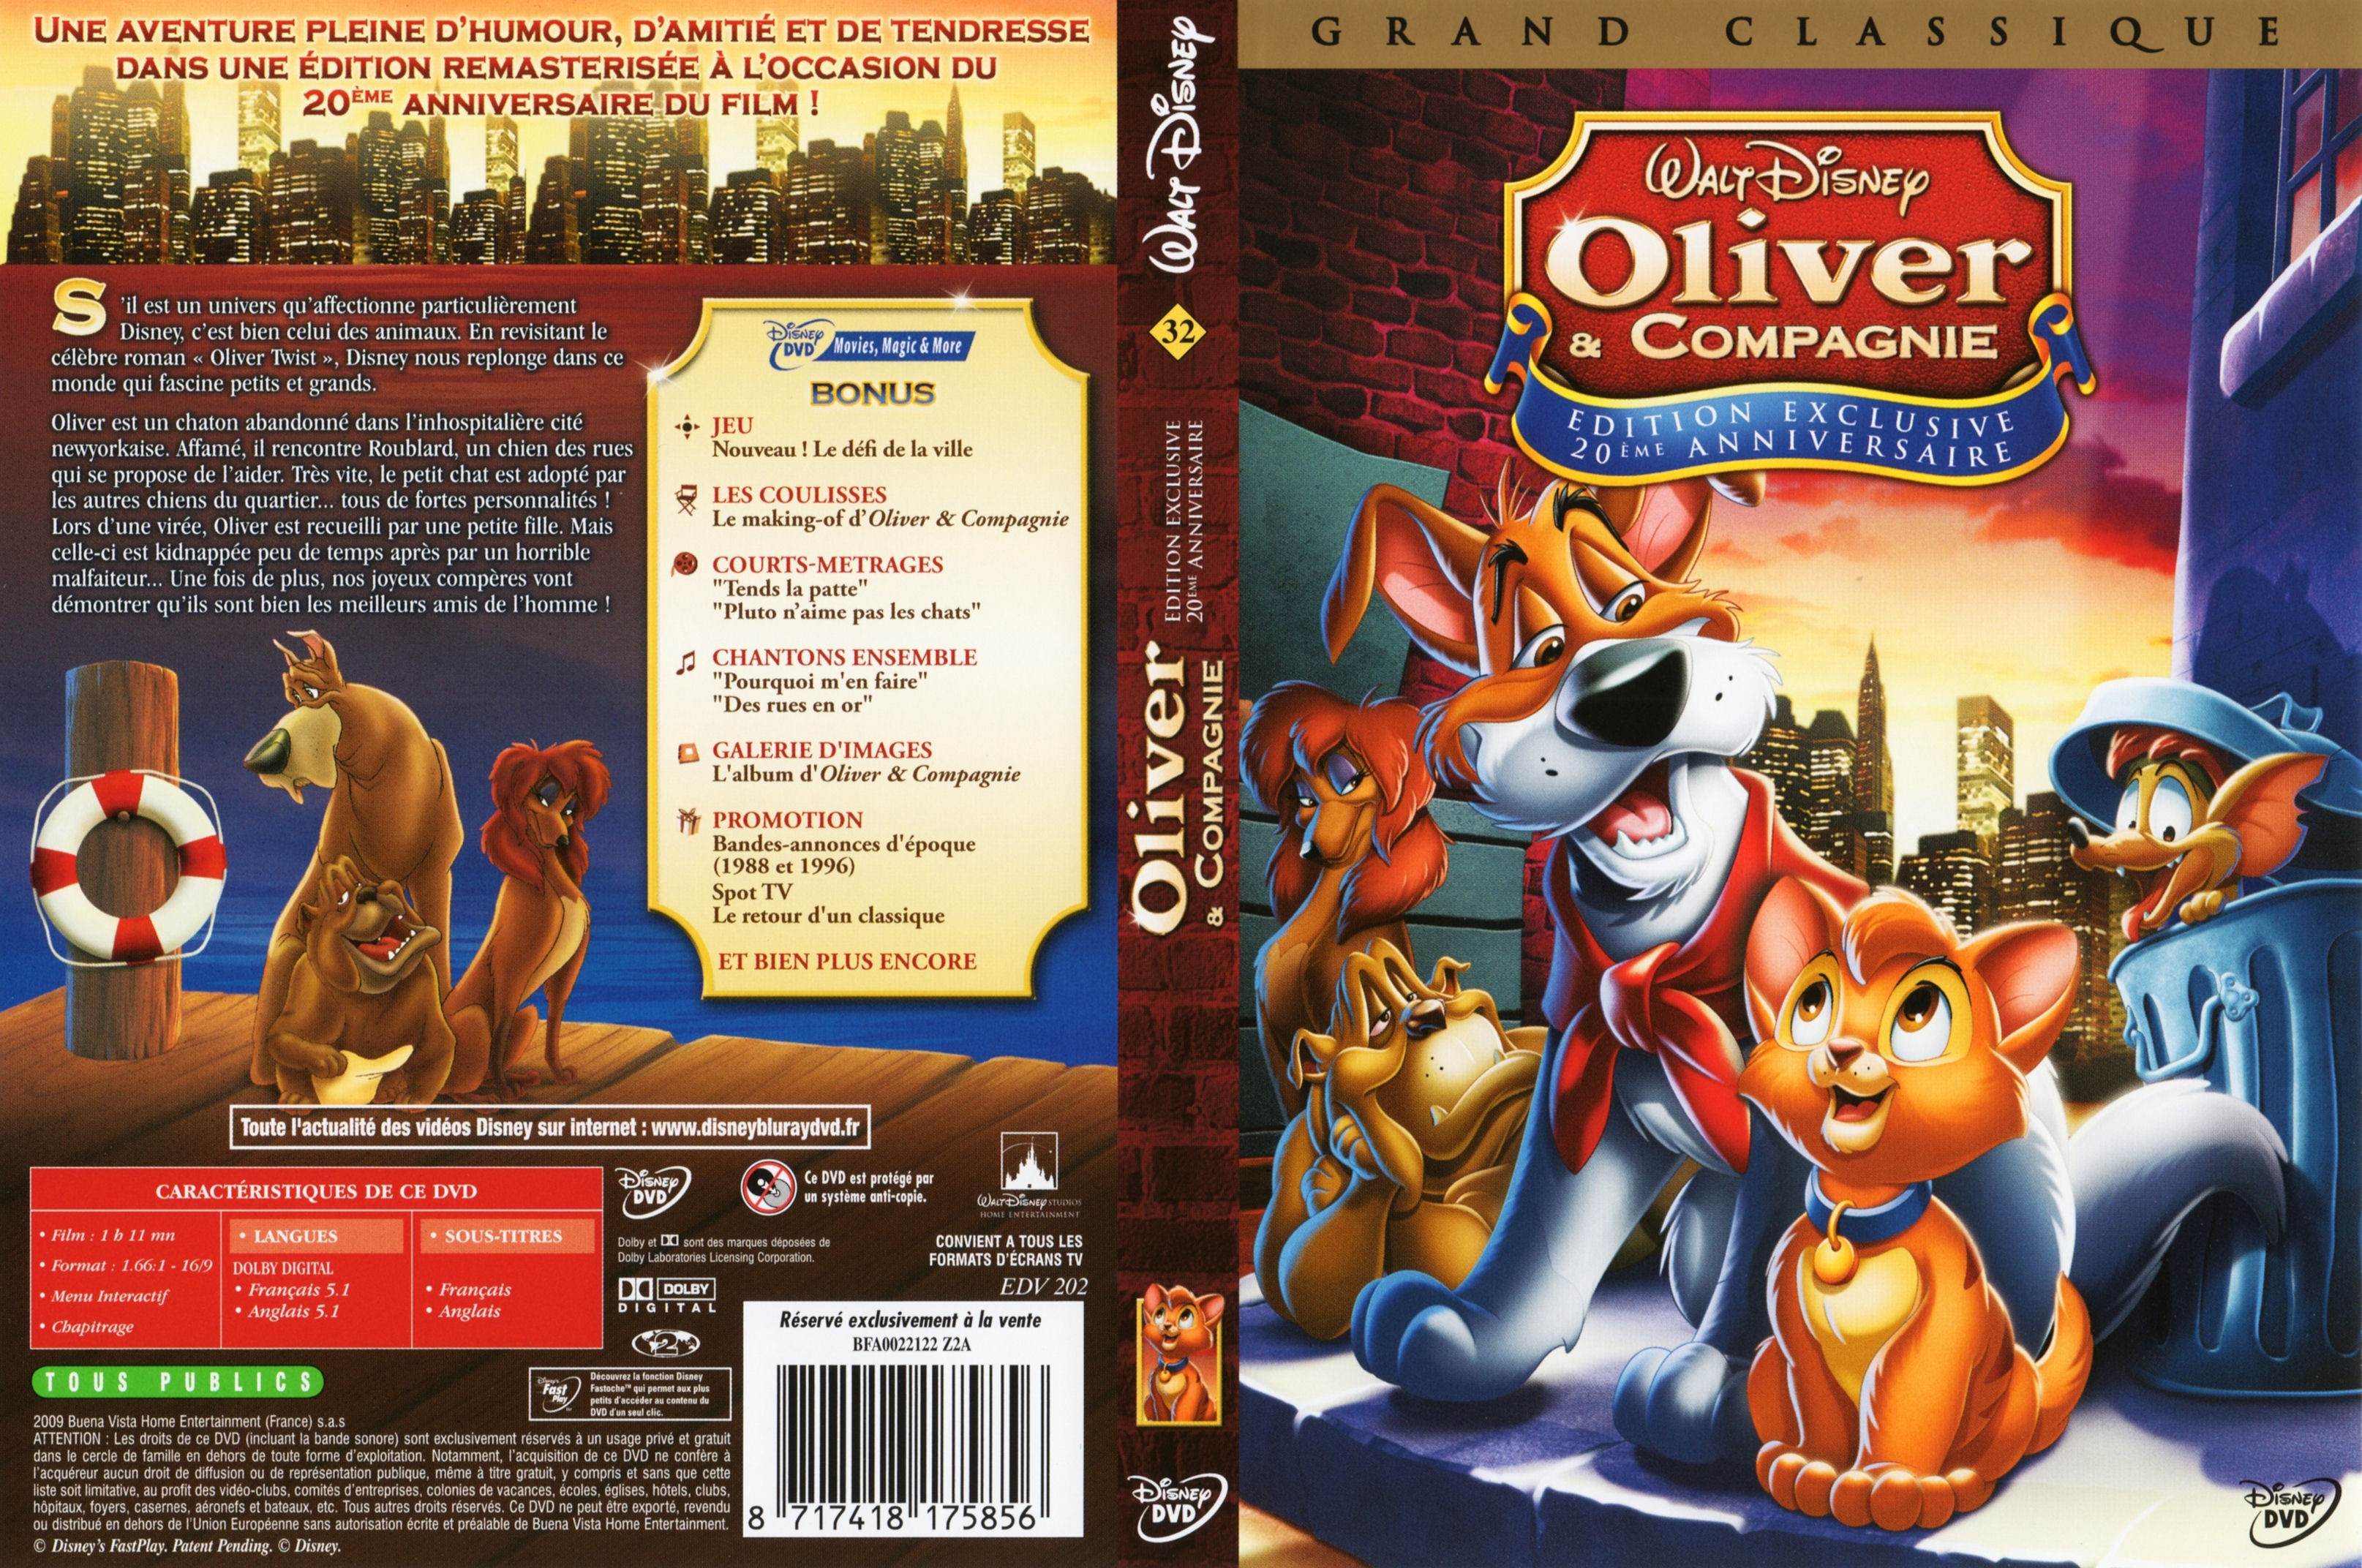 Jaquette DVD Oliver et compagnie v2